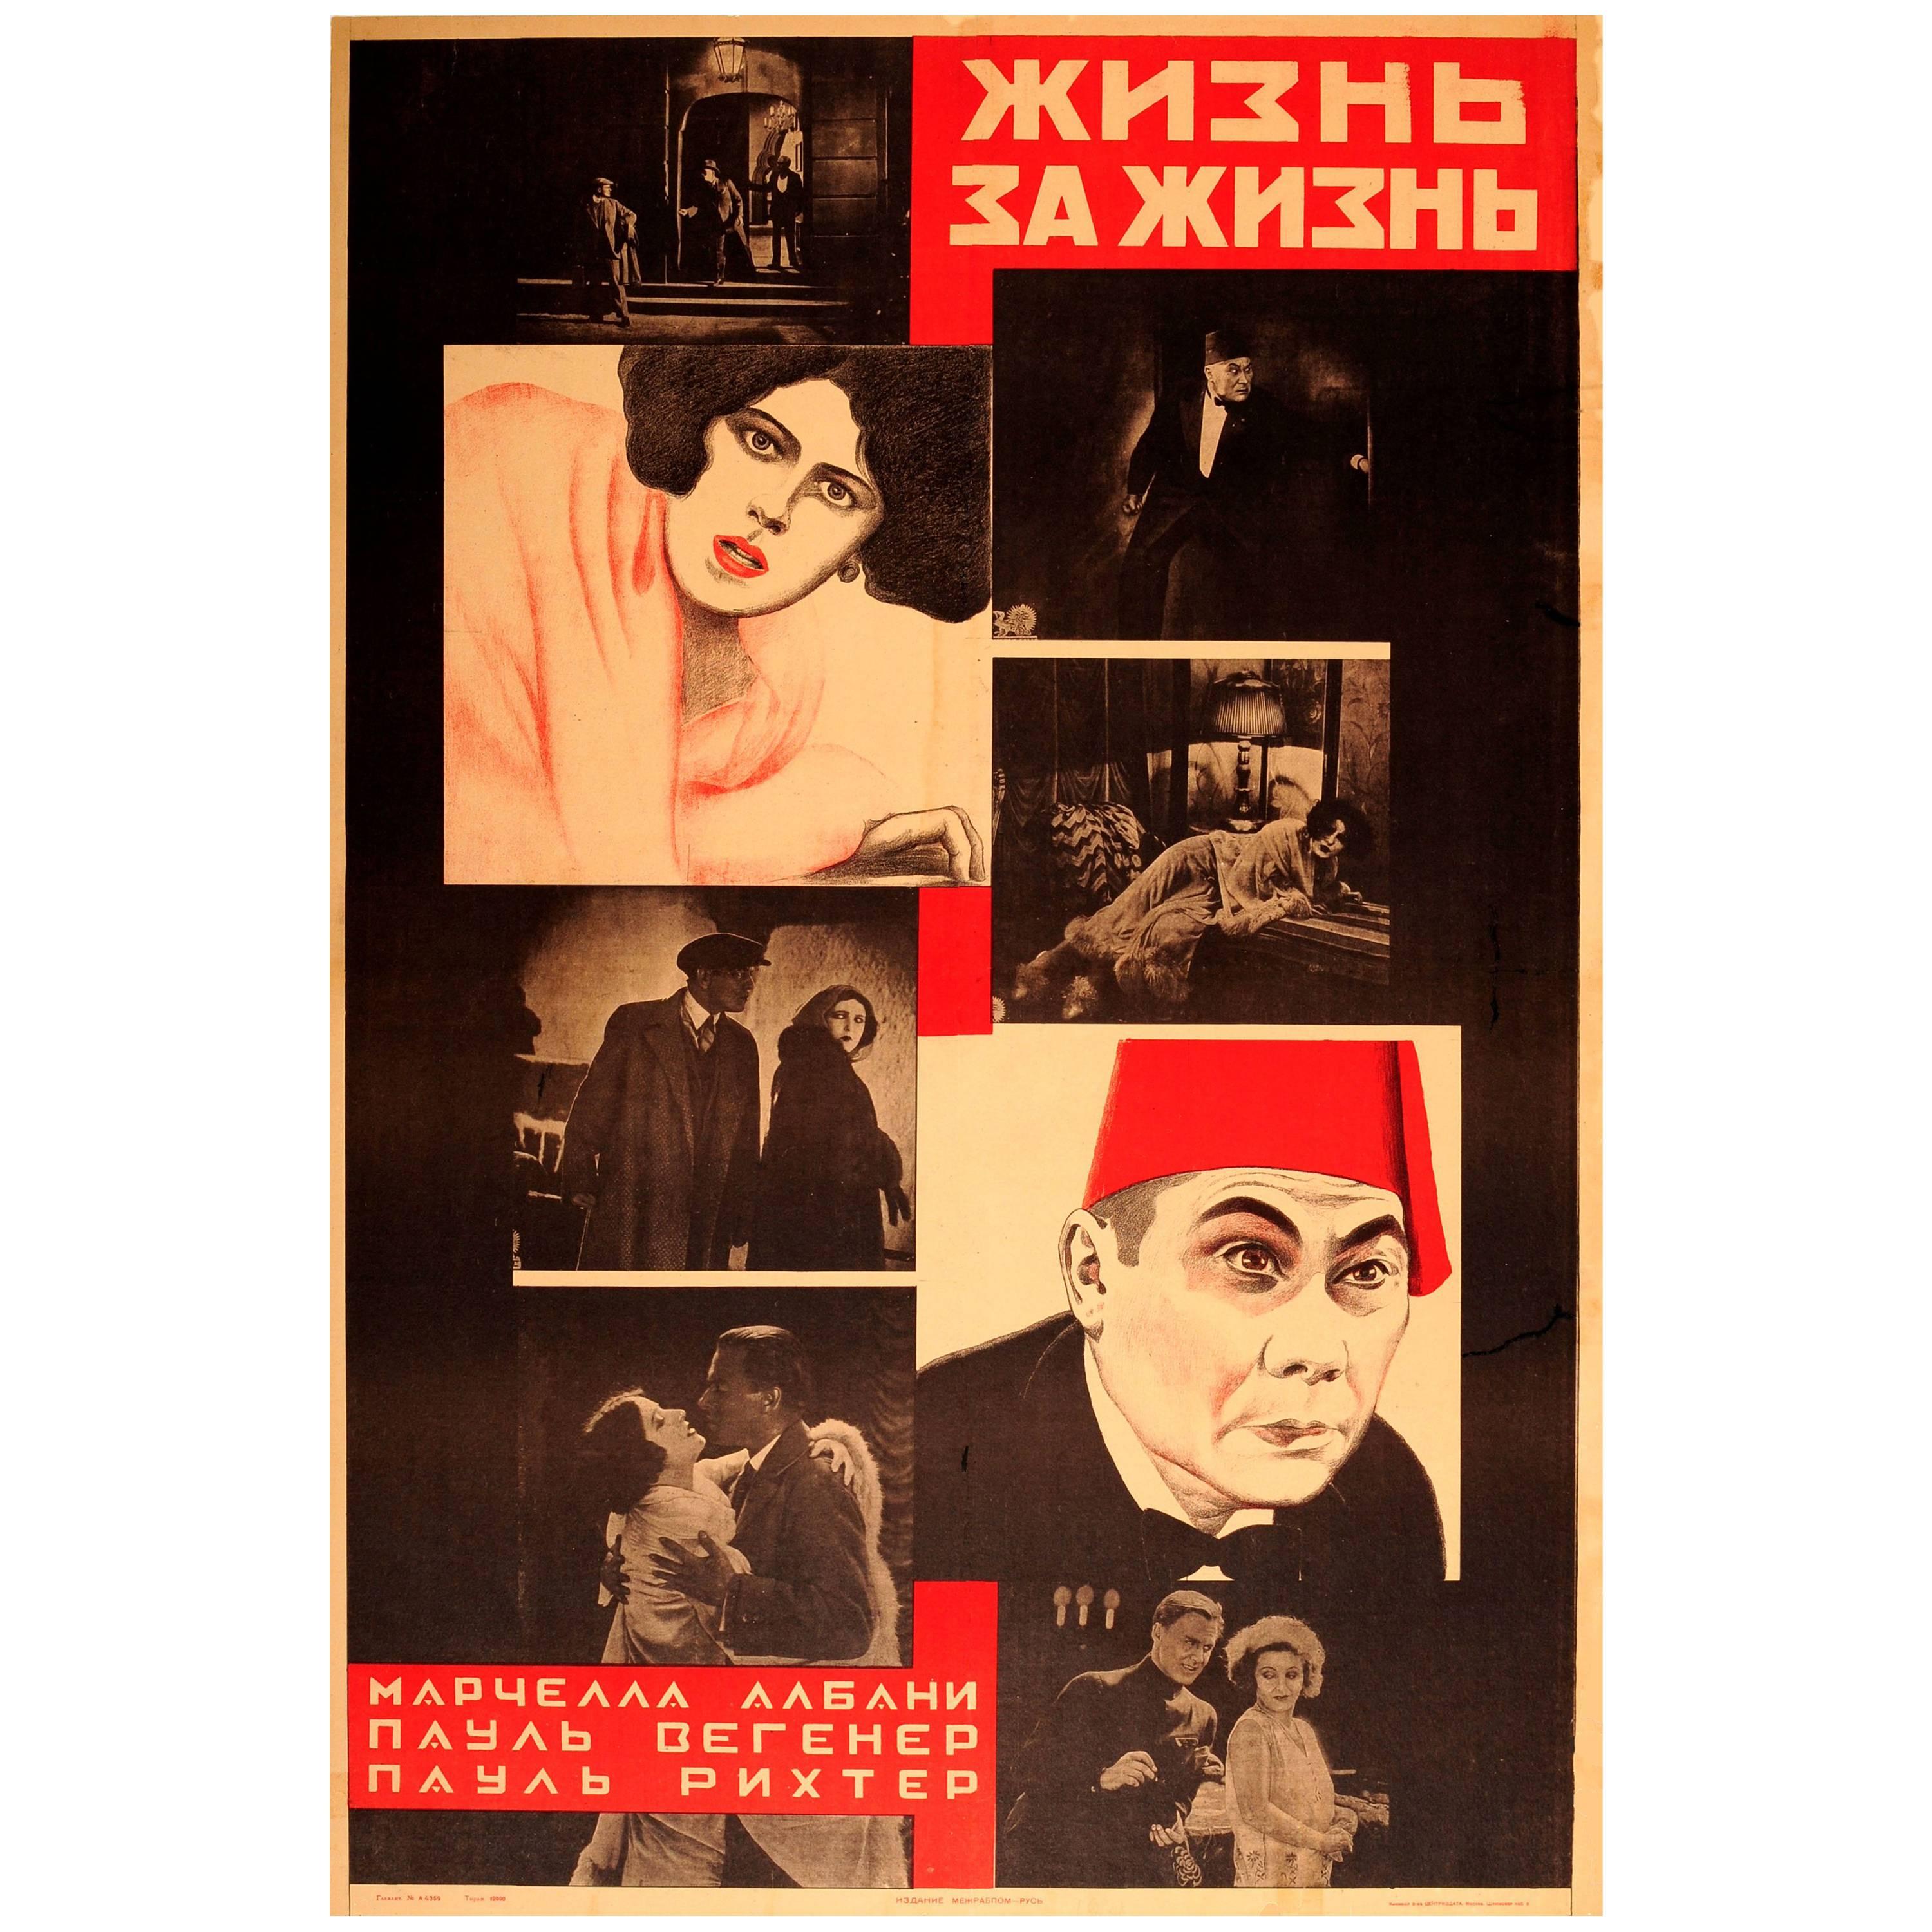 Originales sowjetisches konstruktivistisches Design-Filmplakat für einen unaufhörlichen Film – Dagfin